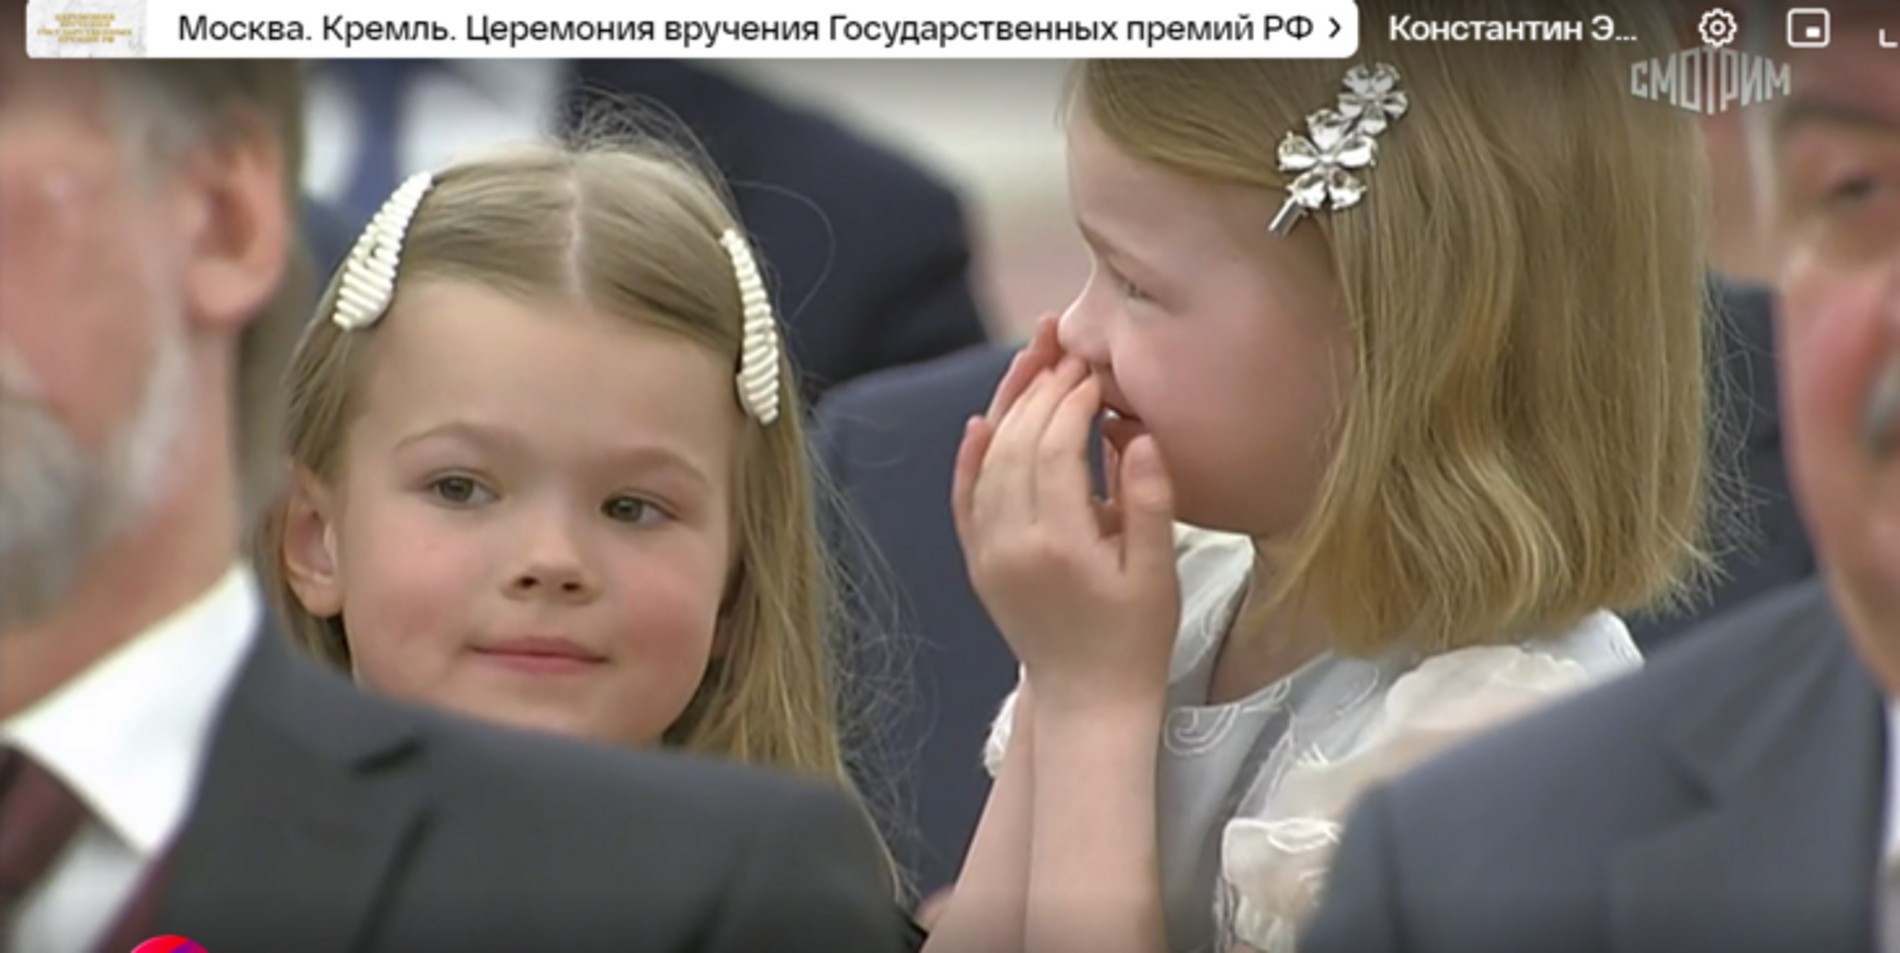 Дети Константина Эрнста на вручении Государственных премий в Кремле
Источник: Первый канал 